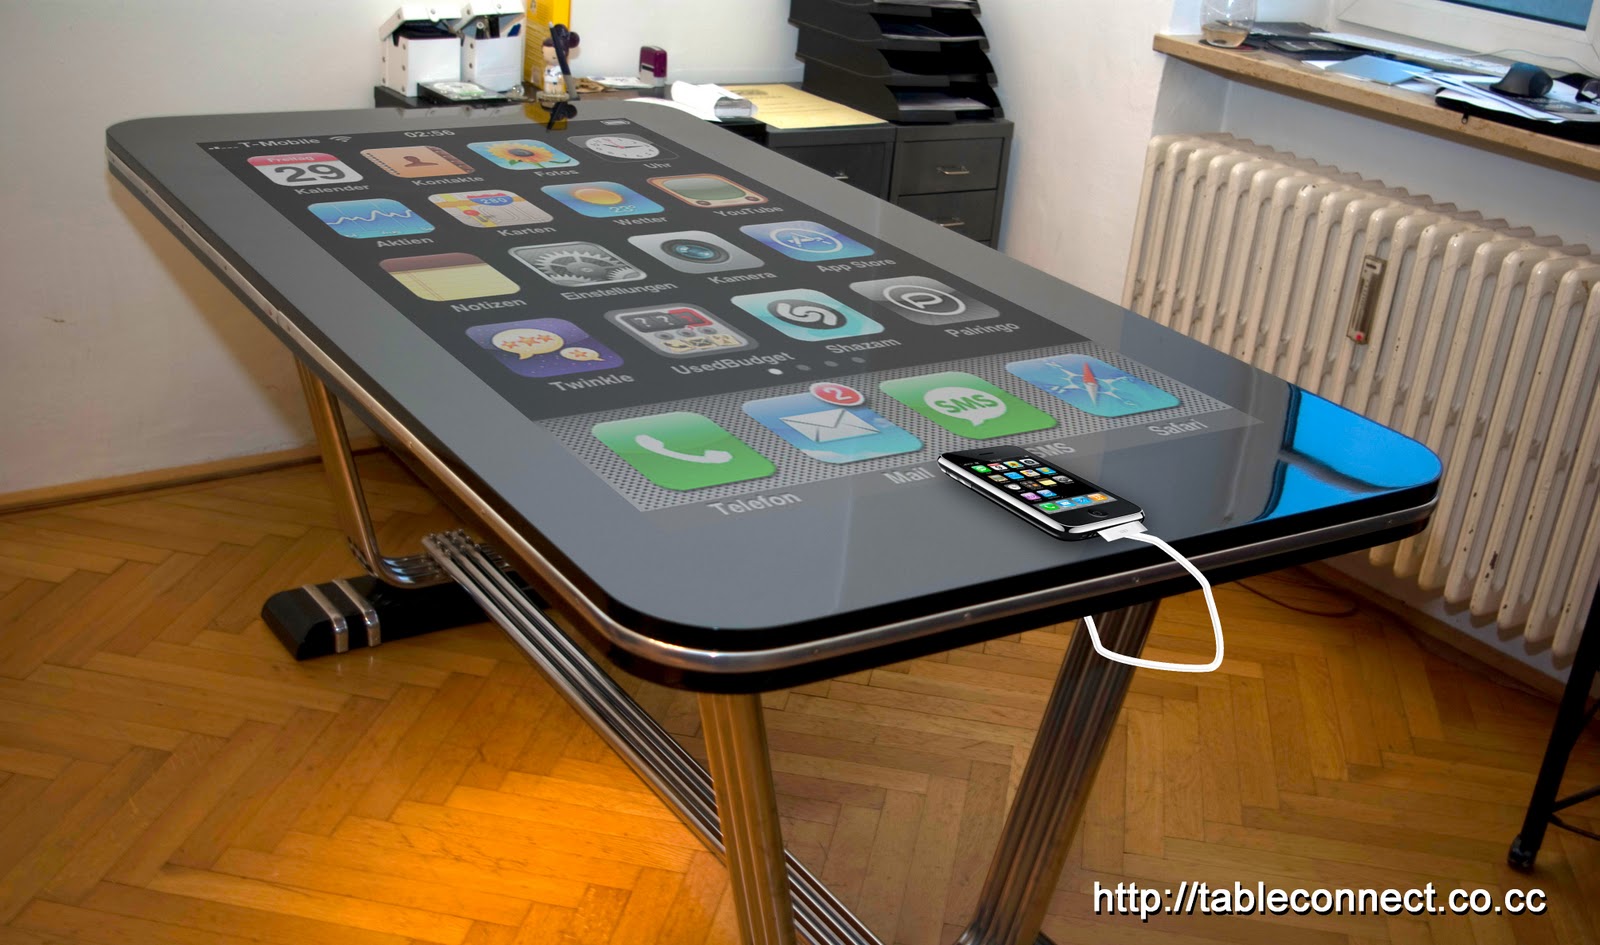 Table Connect: iPhone ovládaný pomocí 58palcového LCD displeje [video]